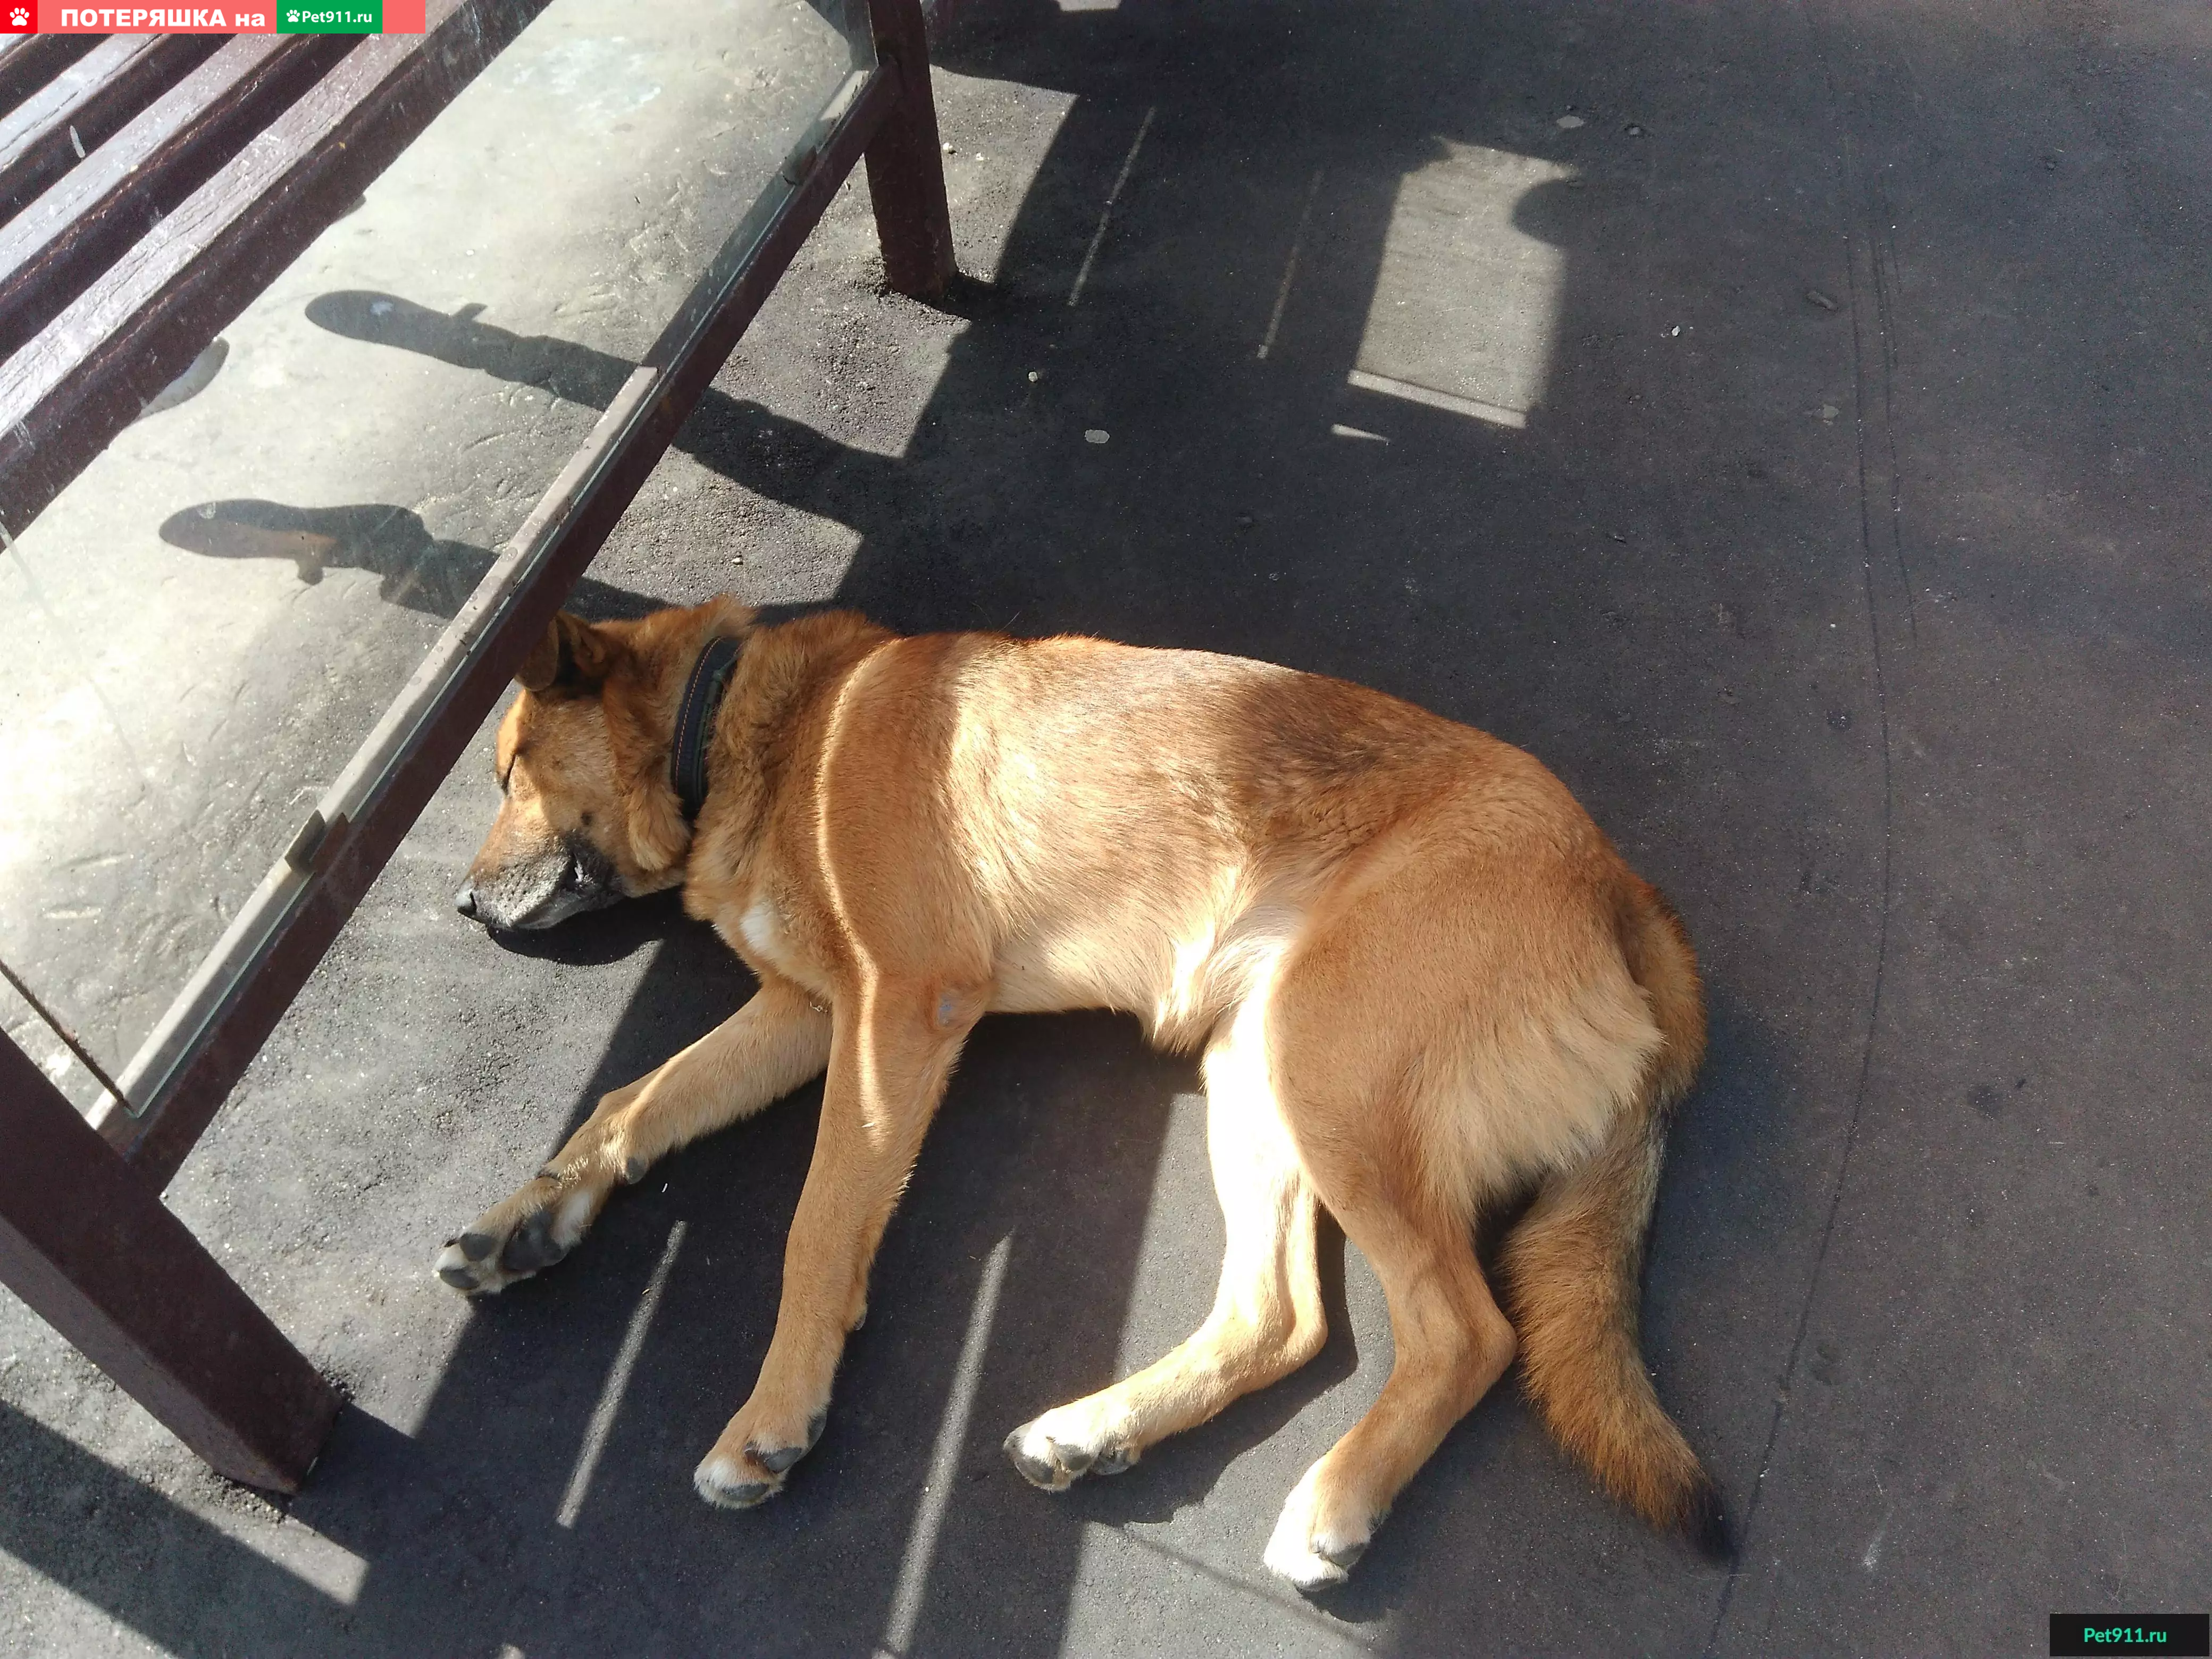 Найдена рыжая собака на остановке, г. Москва